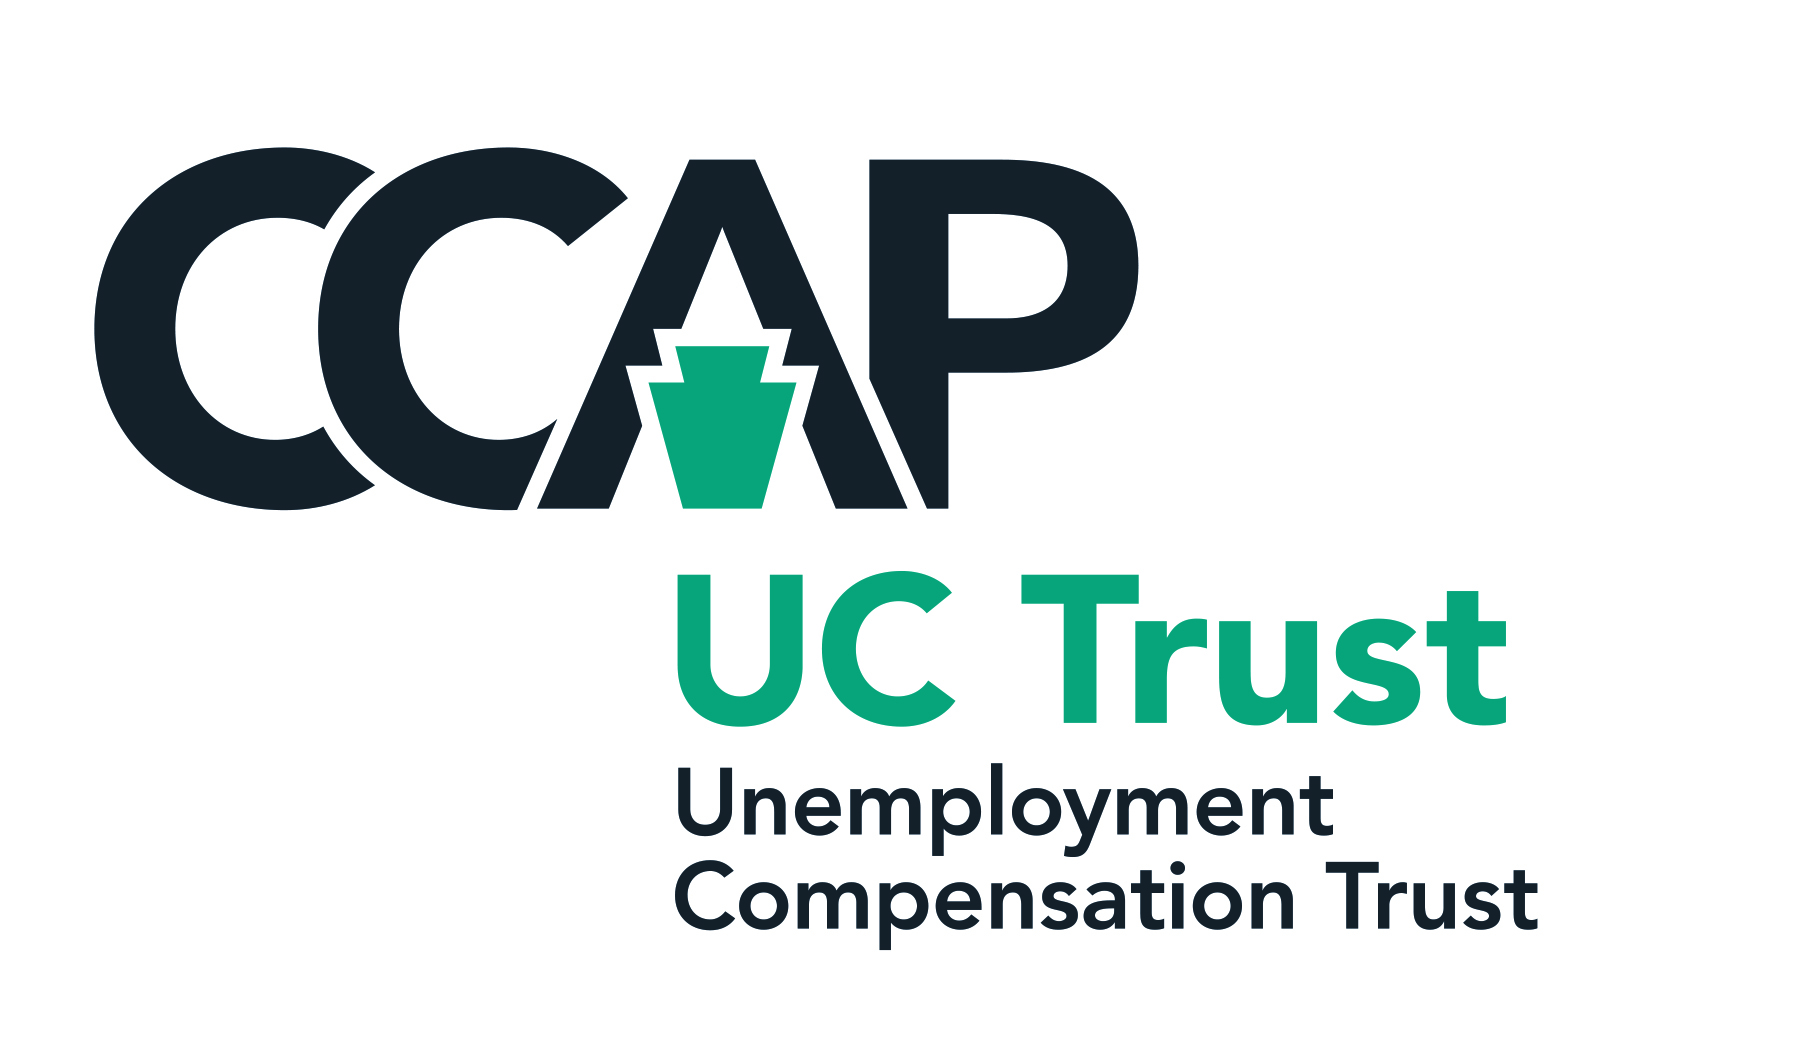 CCAP UC Trust Unemployement Compensation Trust logo